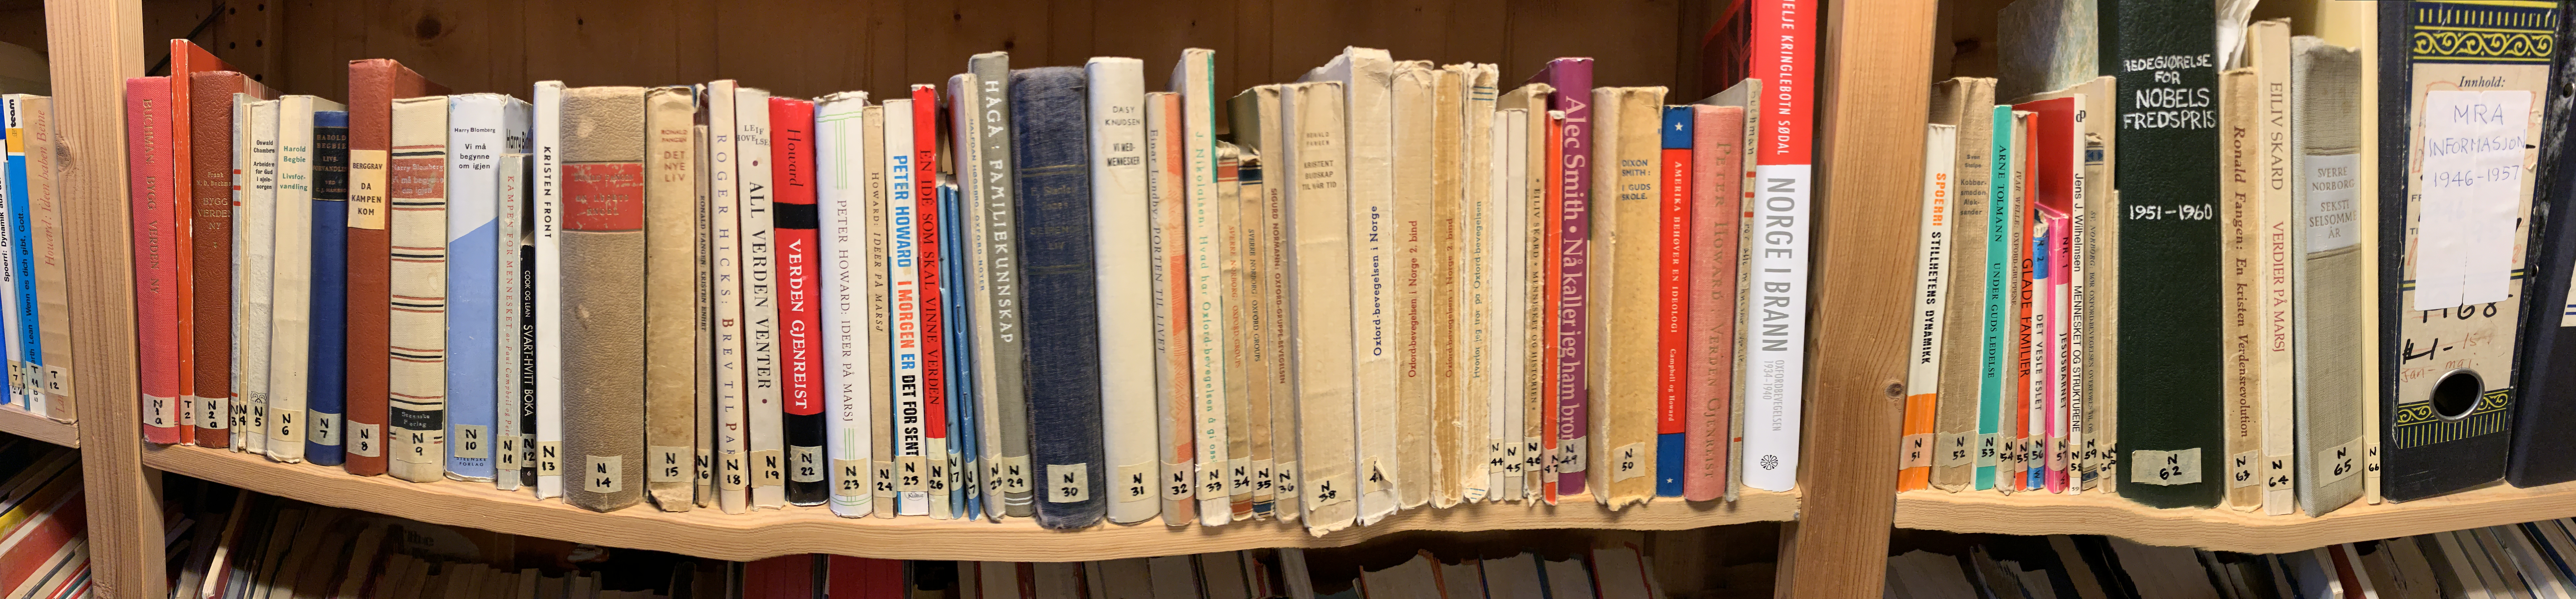 Norwegian books in Norway archive